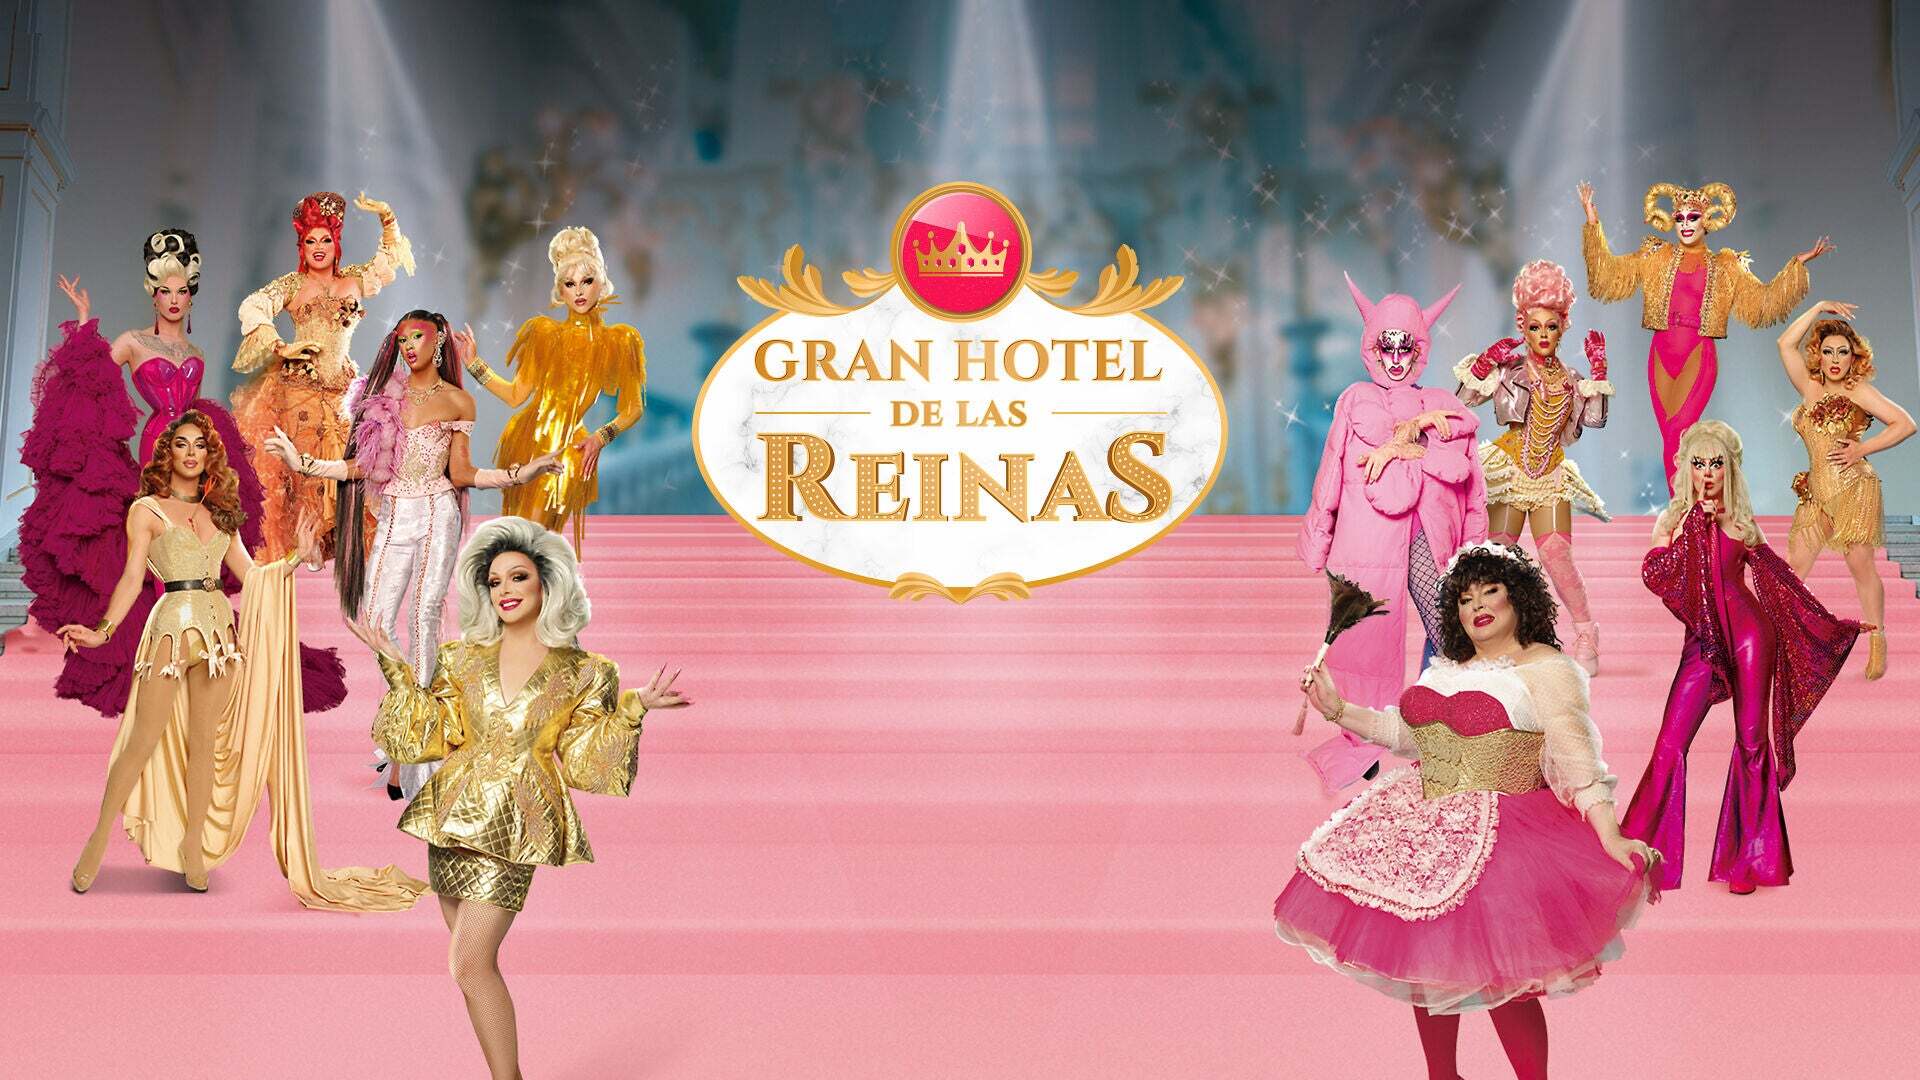 GHR 2021 Gran hotel de las Reinas - 2021